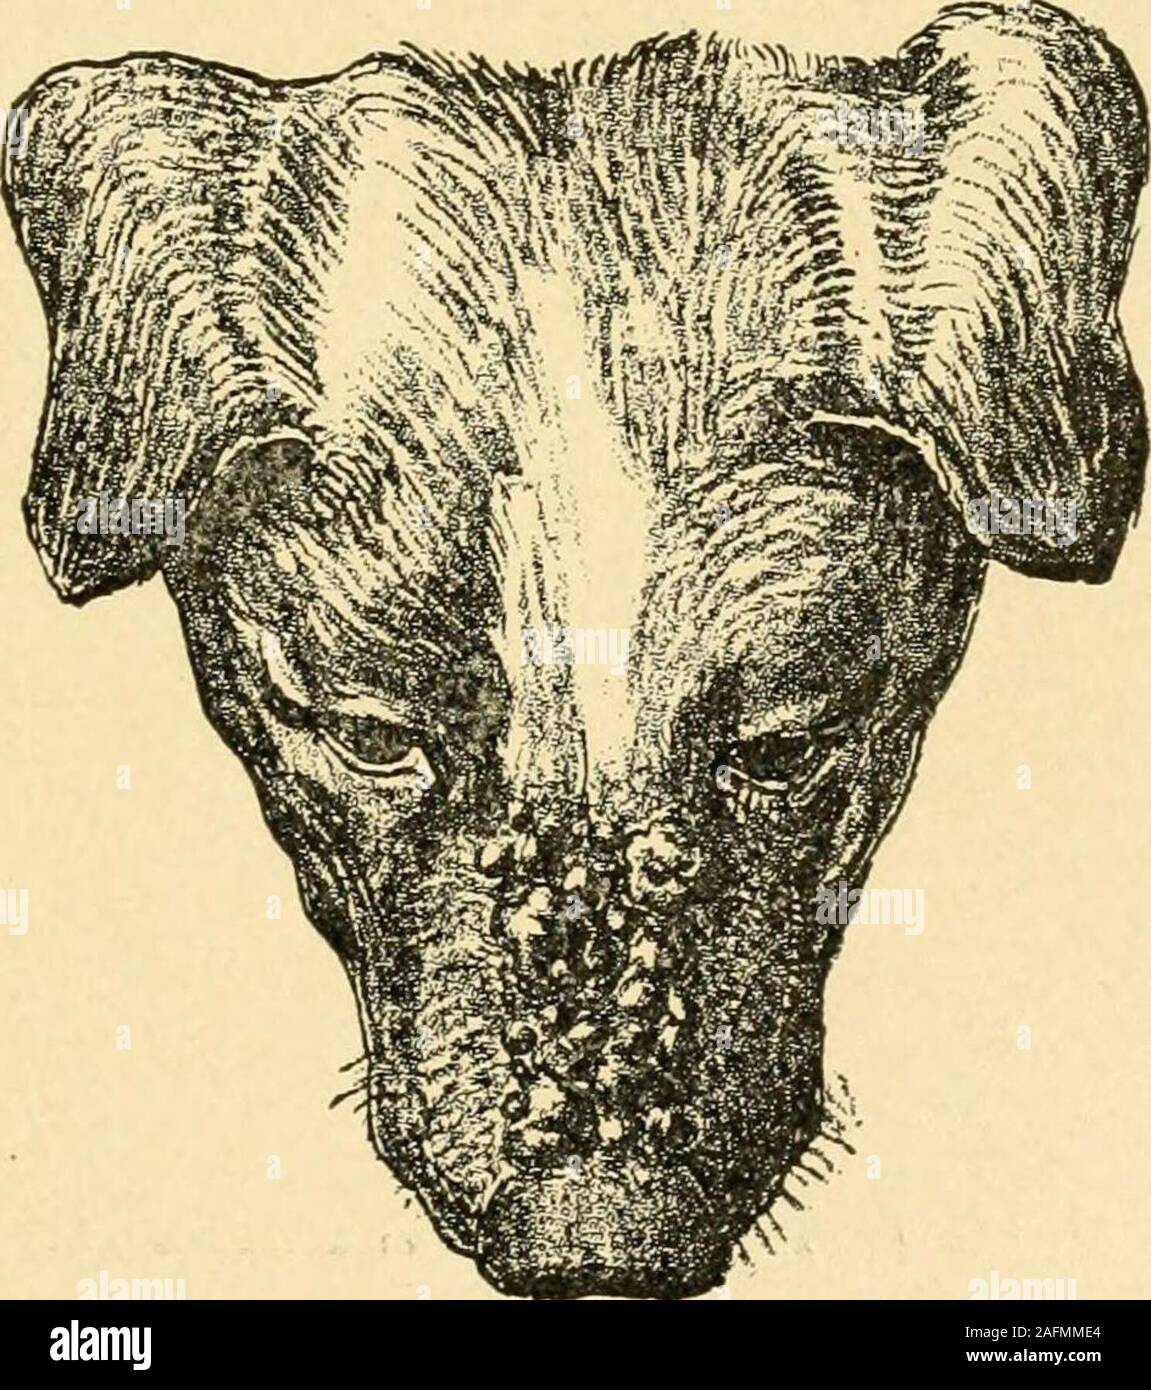 Krankheiten des Hundes und ihre Behandlung. follikulitis oder  perifolliculitis, und der Hund ist als arather Grab betrachtet, wie die  verschiedenen Follikel in den Hund werden von einem gemeinsamen follikuläre  Kanal freciuentlyconnected,